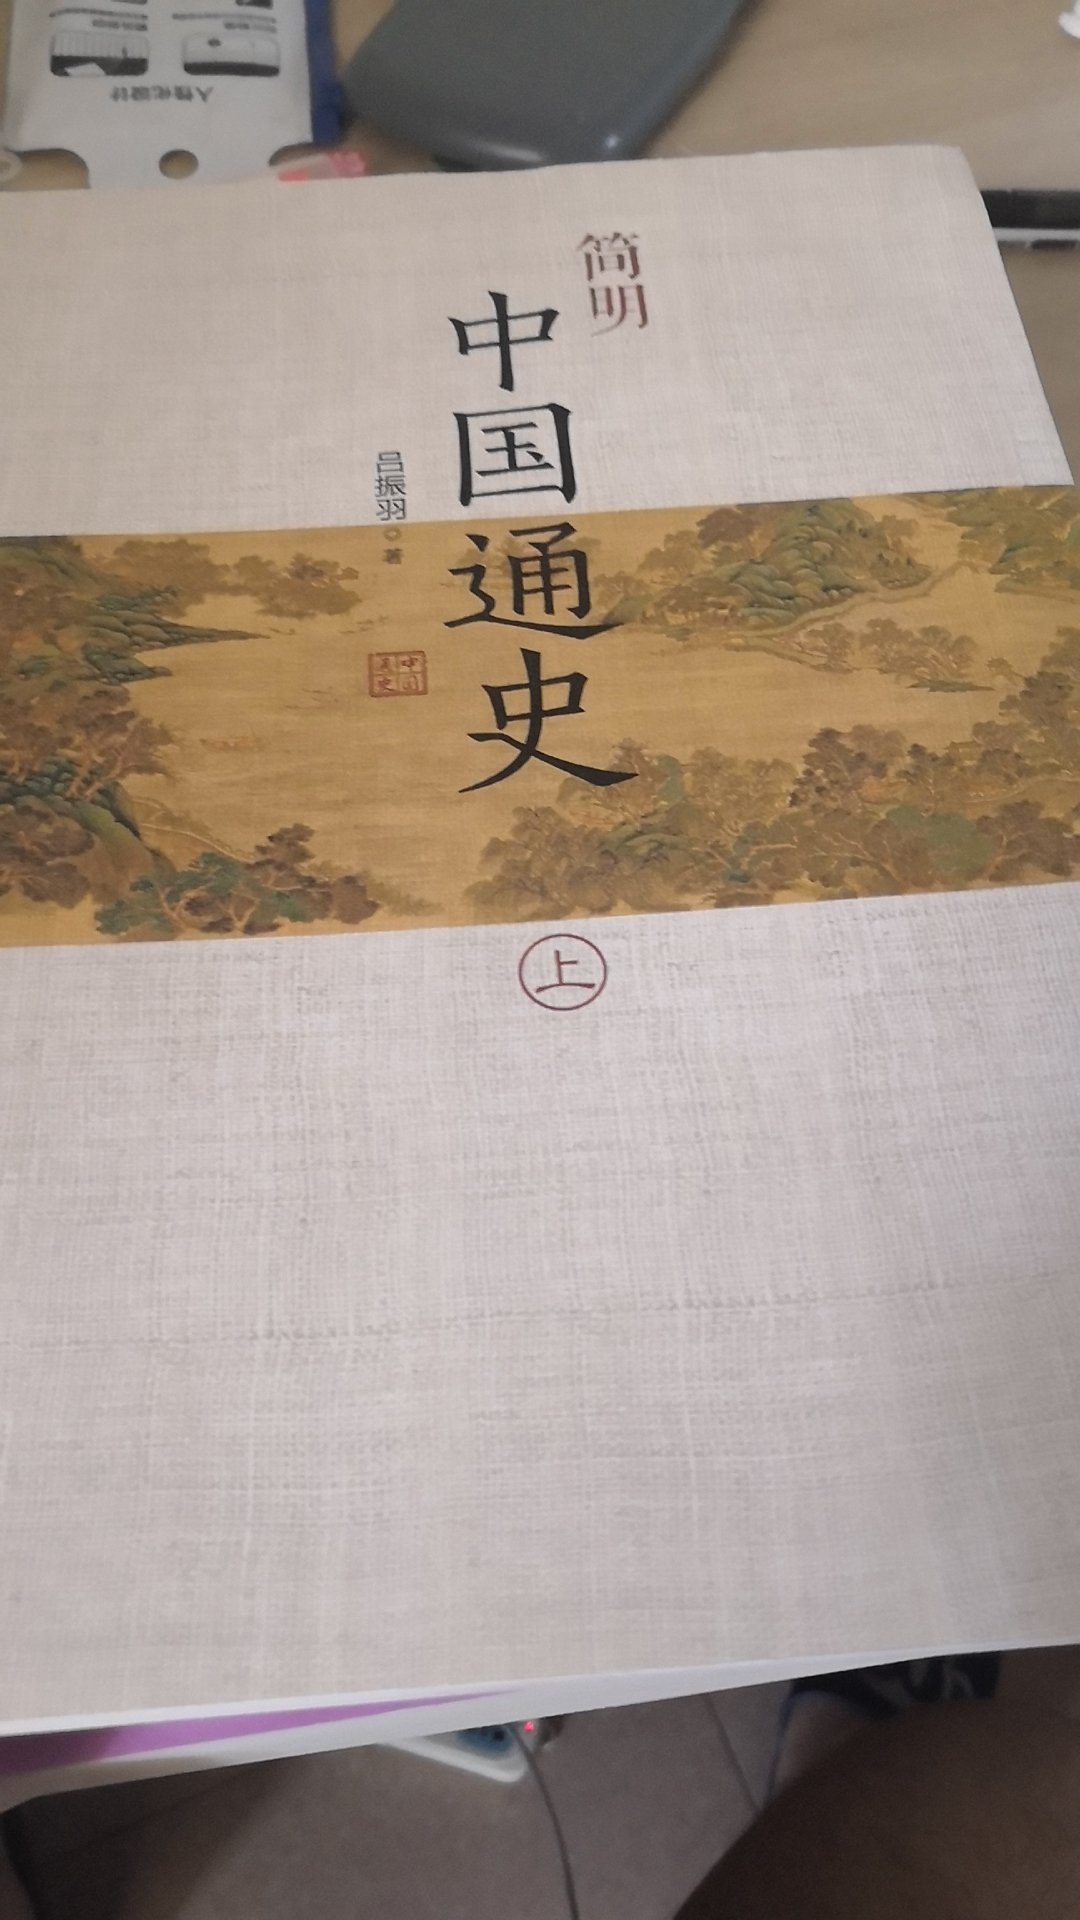 这本书是北大历史系的，中国古代史，这门课程的推荐书目。